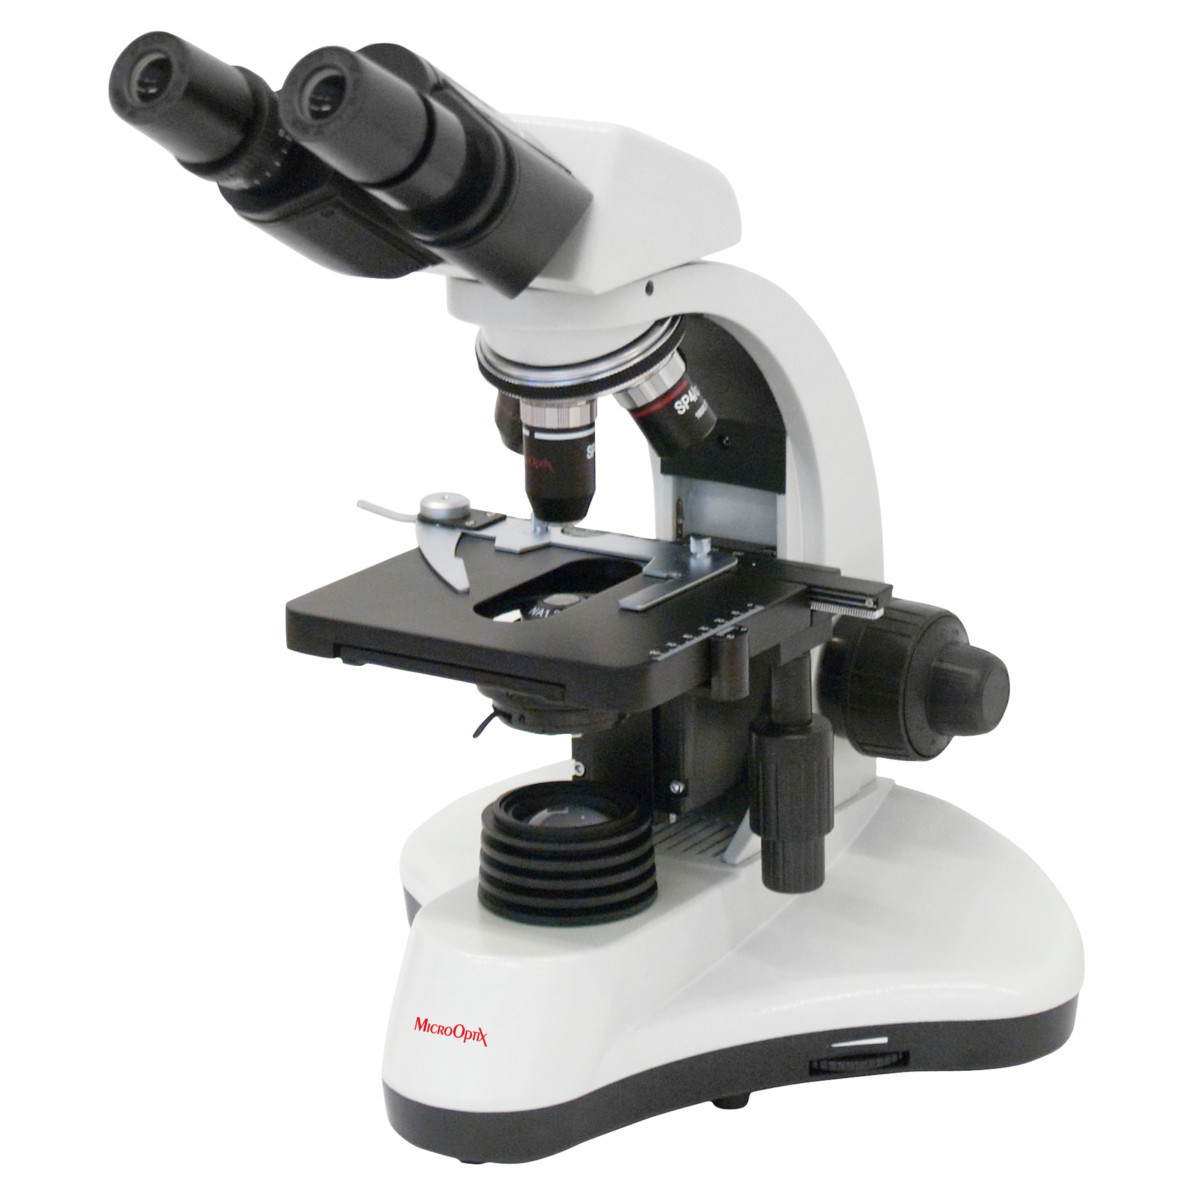 Микроскоп MicroOptix MX-100 (бинокулярный), Австрия